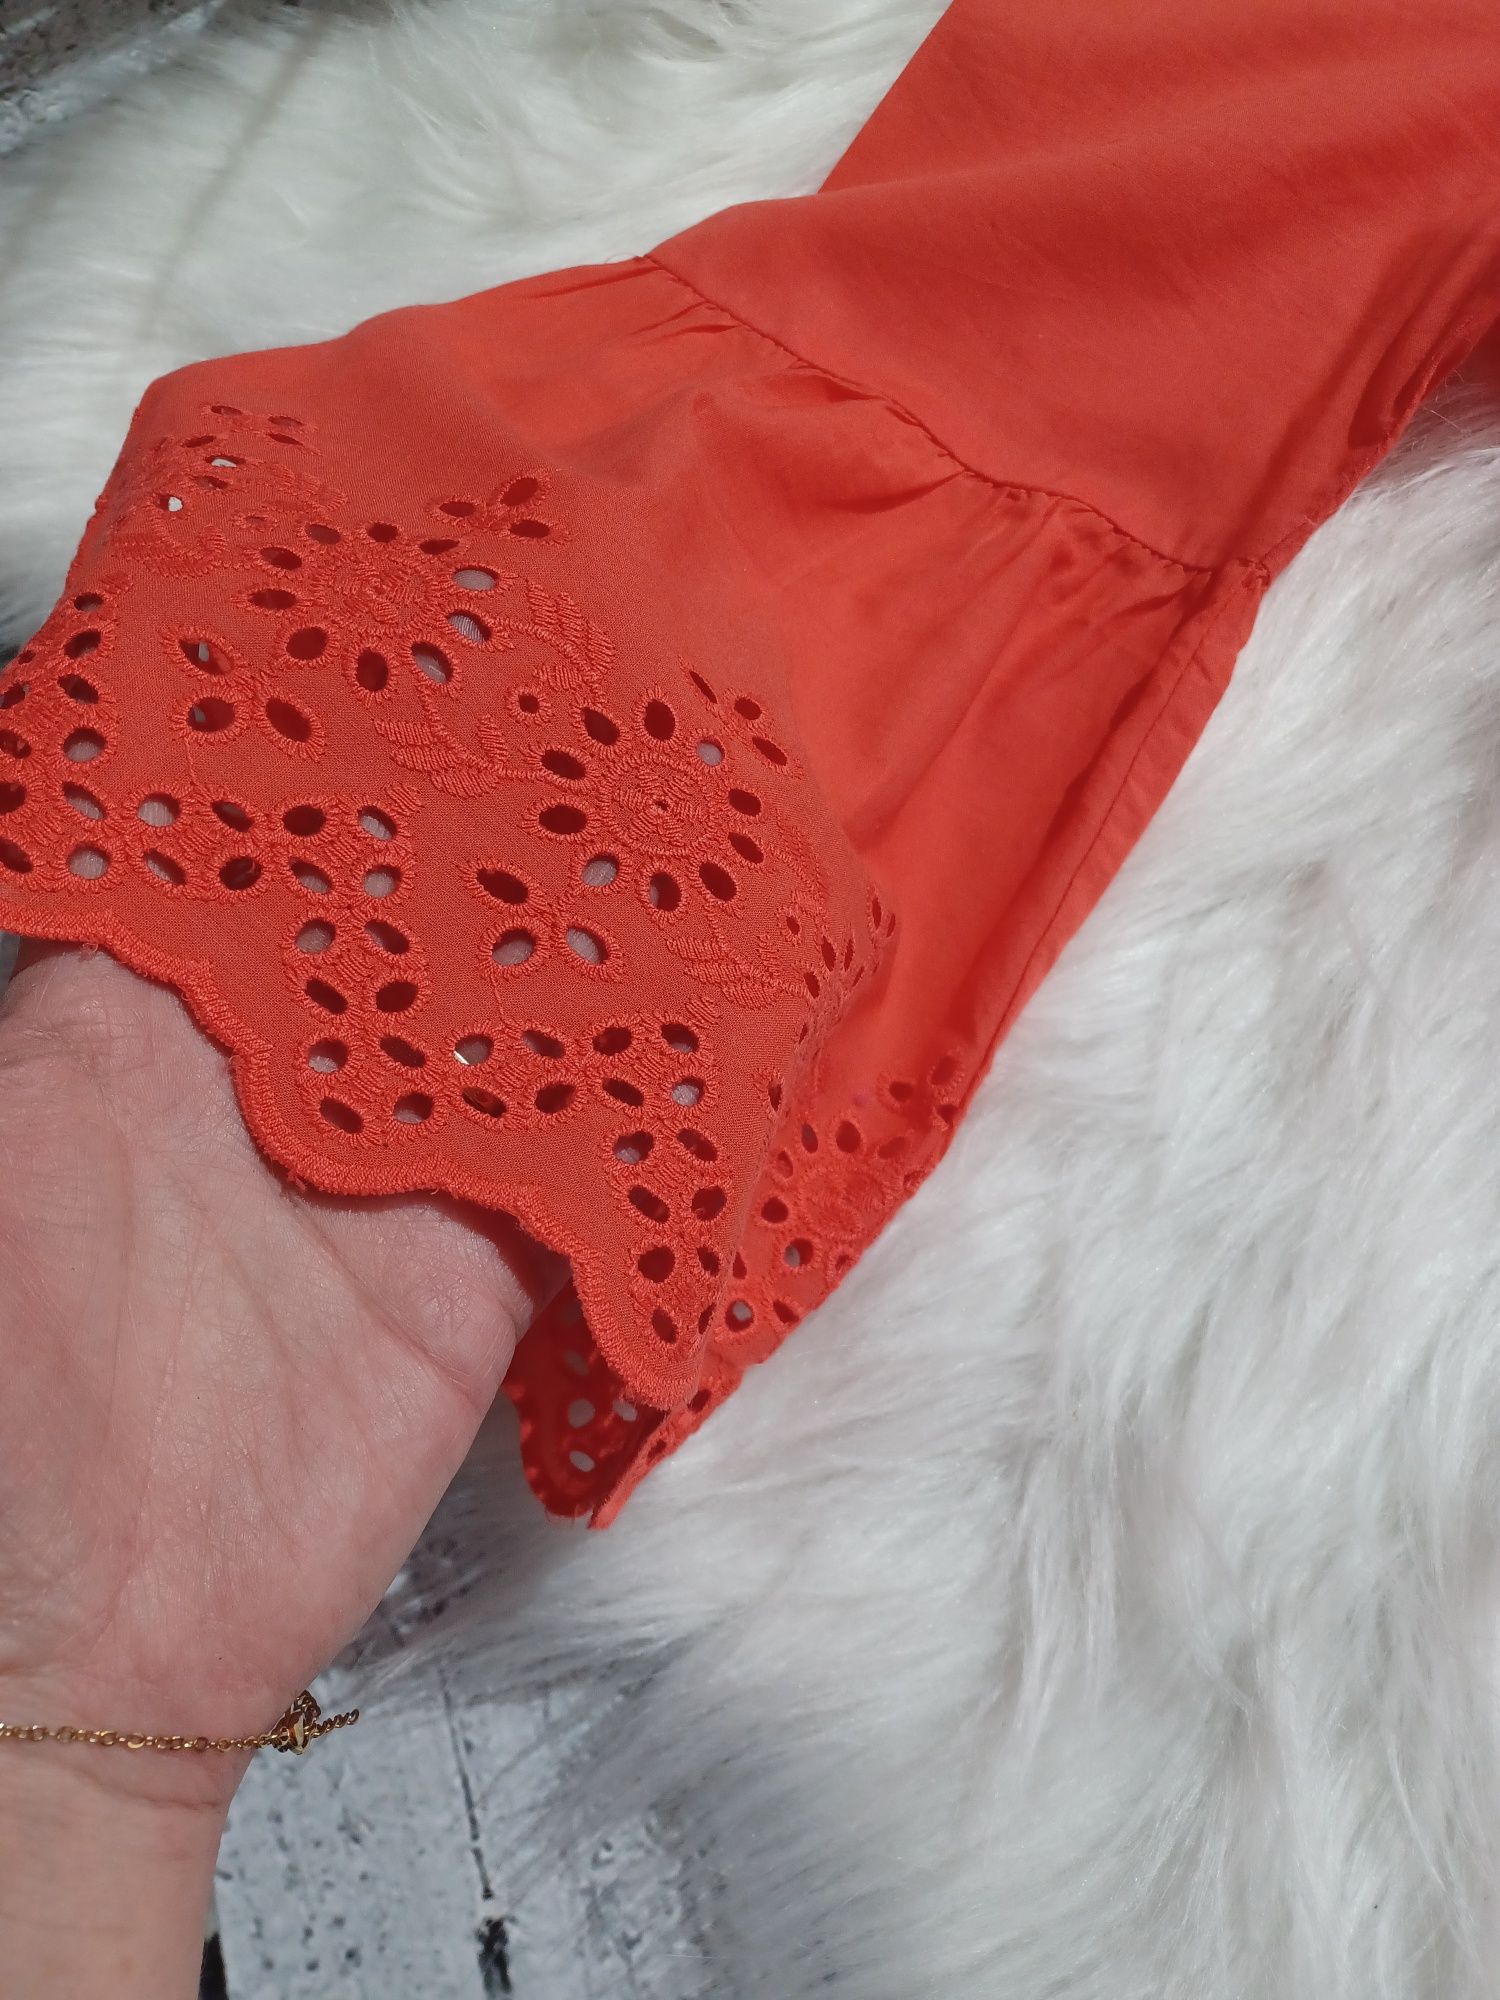 Pomarańczowa bluzeczka Bpc selection bonprix rozmiar ażurowe rękawy